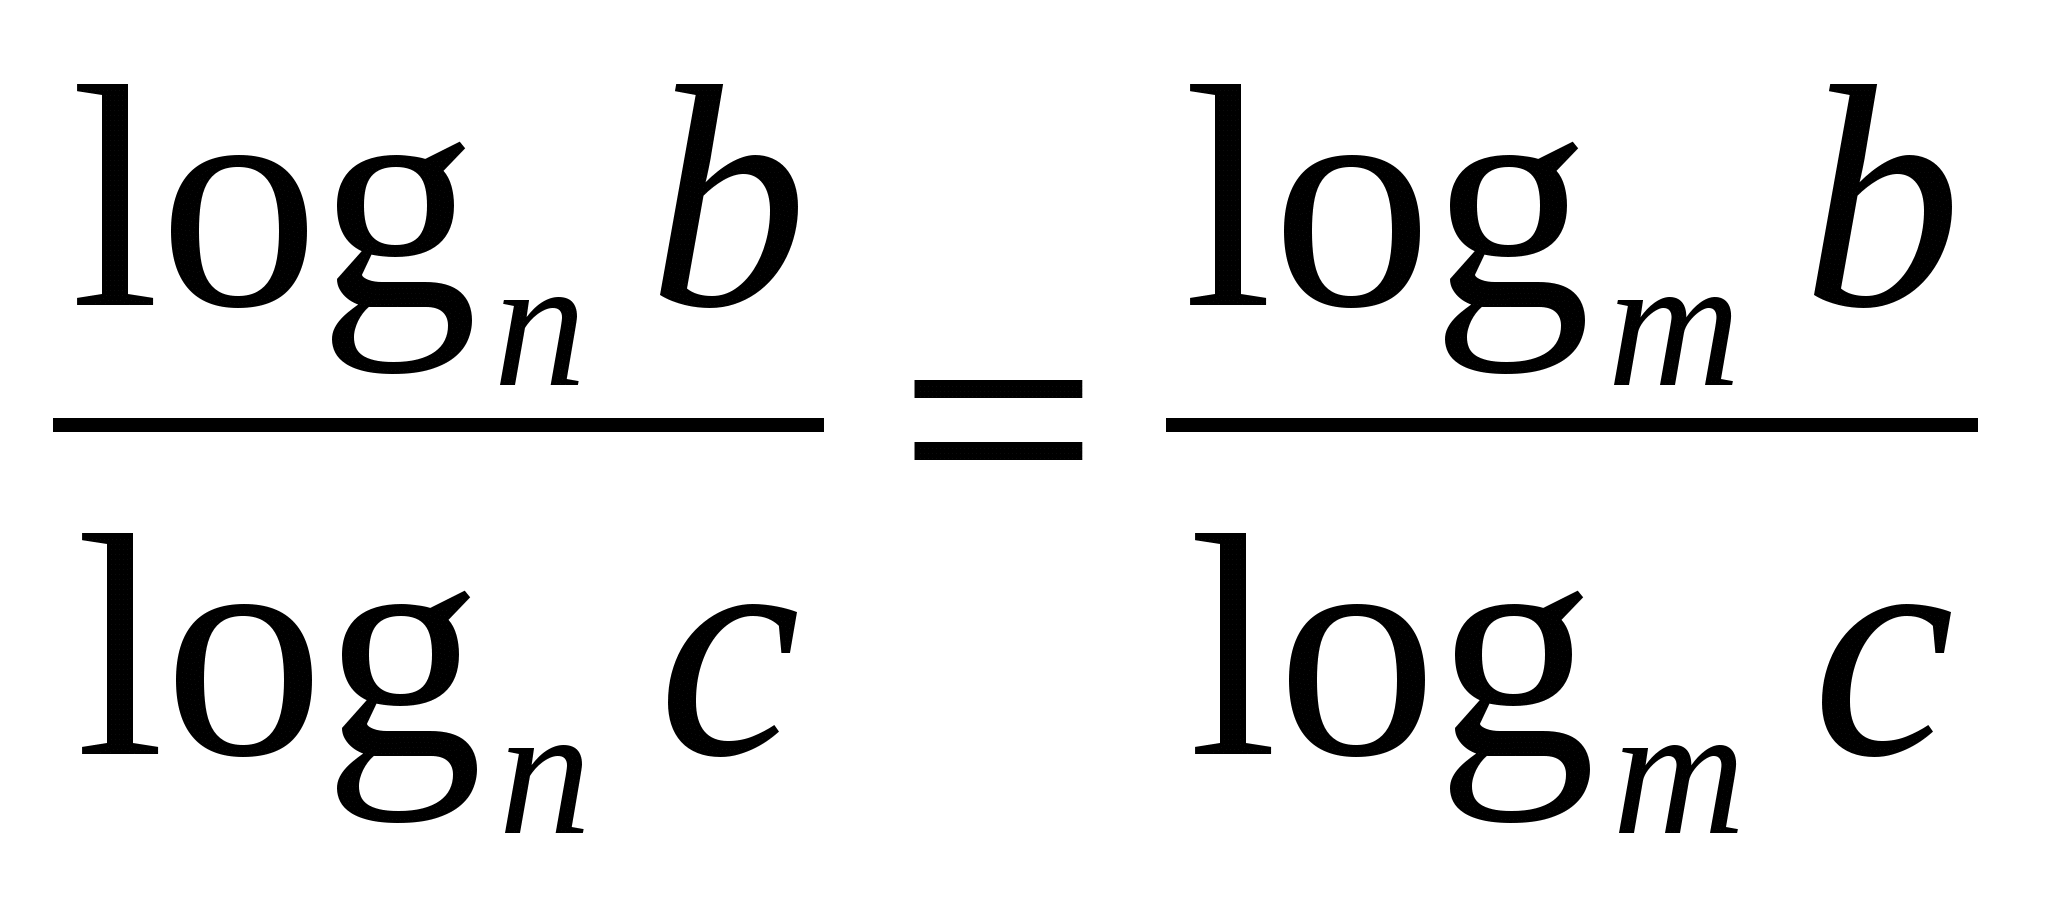 Справочный материал по теме Логарифм и его свойства